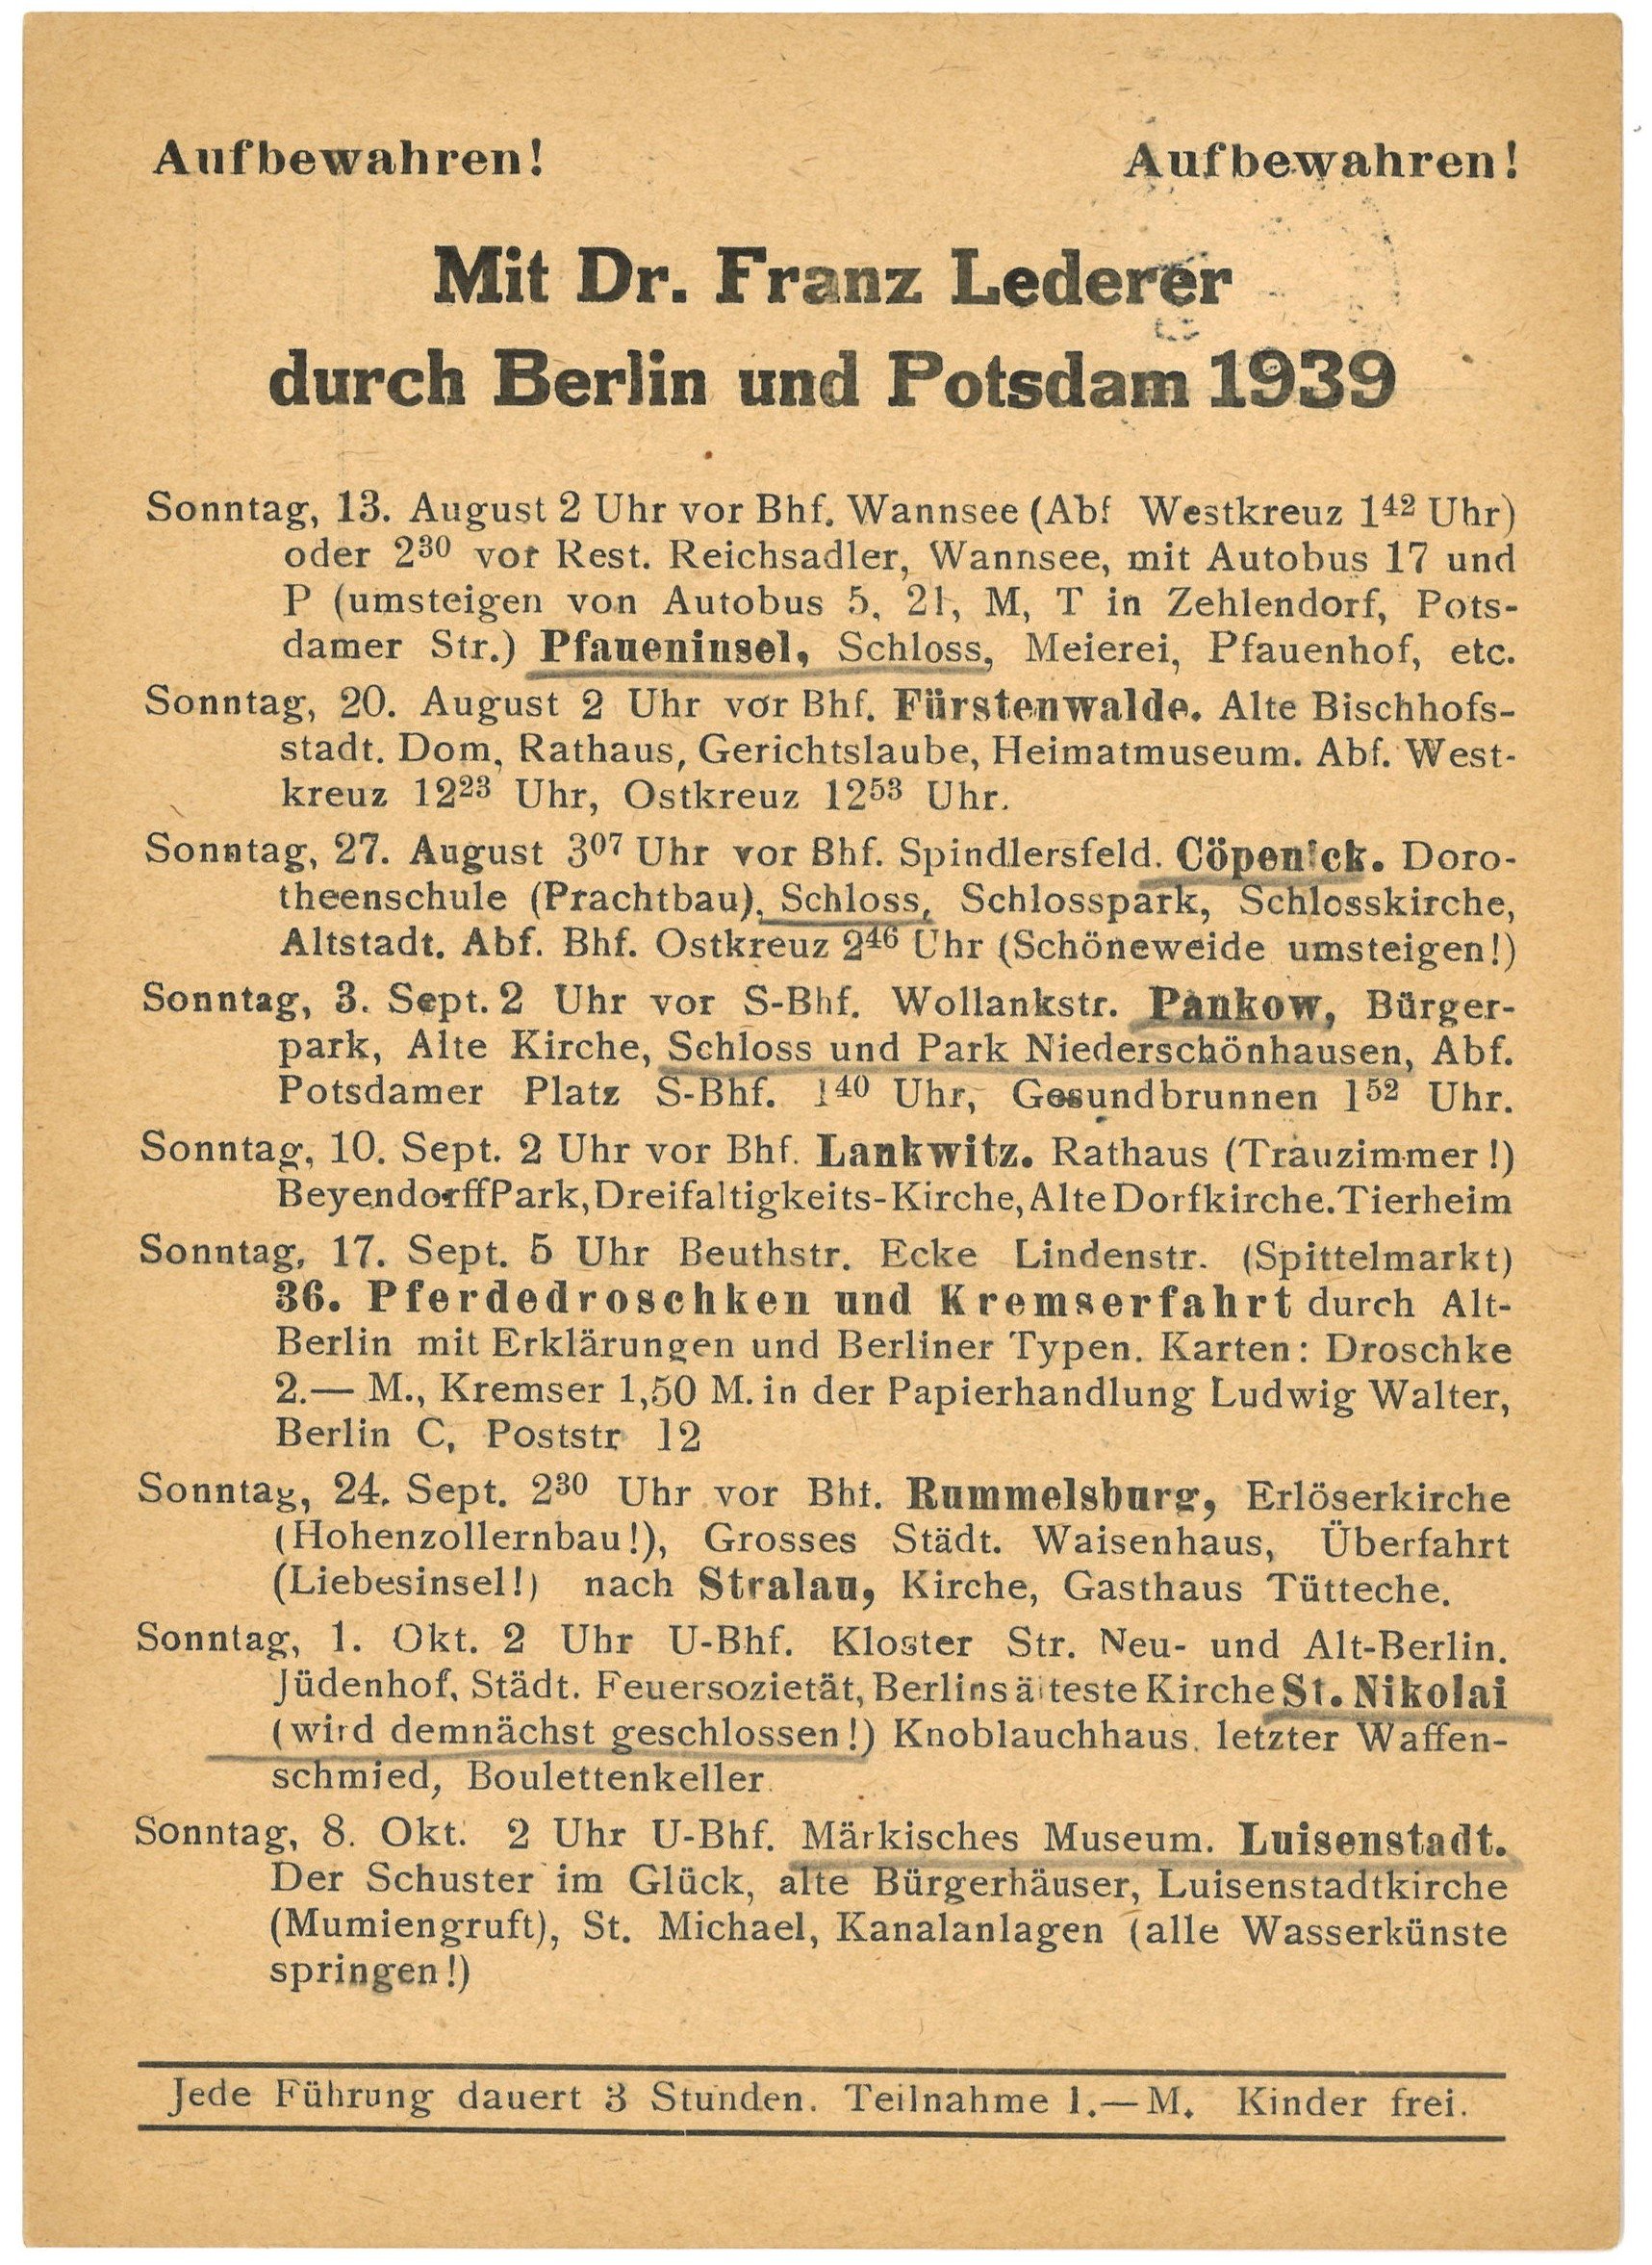 Programm der Berlin- und Potsdam-Führungen von Dr. Franz Lederer für August bis Oktober 1939 (Landesgeschichtliche Vereinigung für die Mark Brandenburg e.V., Archiv CC BY)